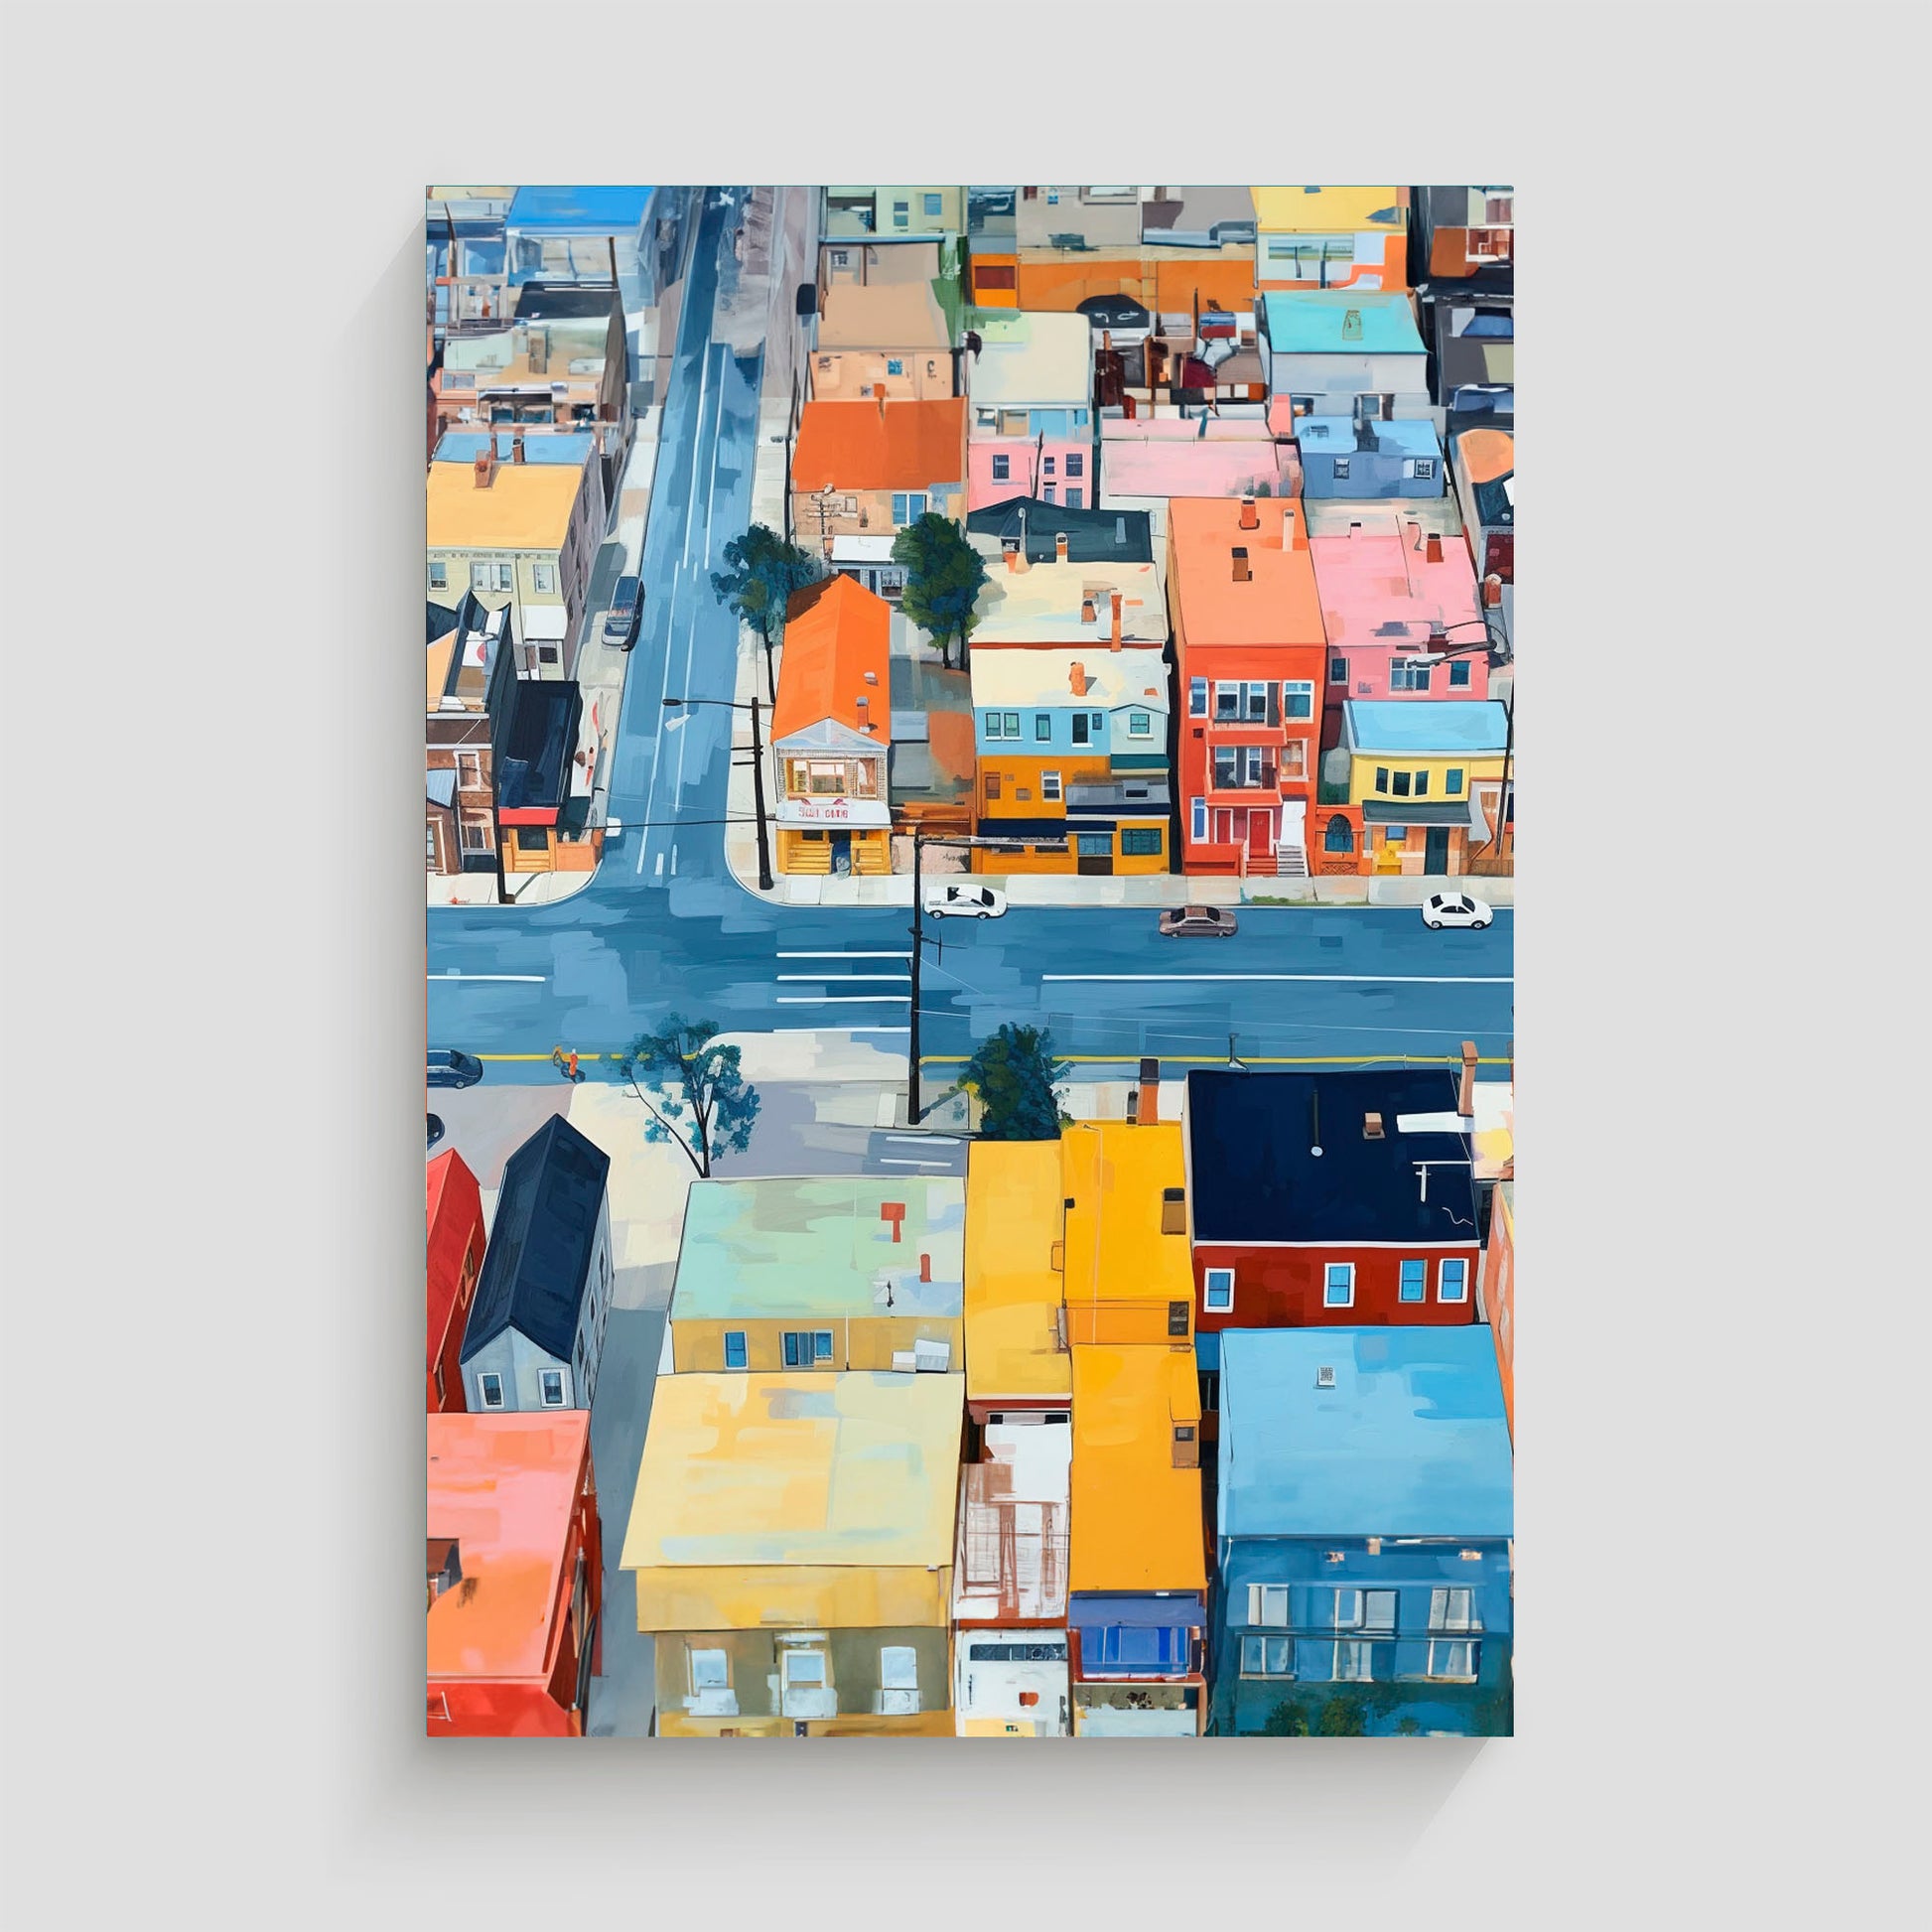 Imagen aérea de un barrio urbano con edificios de colores vivos y calles transitadas, mostrando intersecciones y coches circulando.